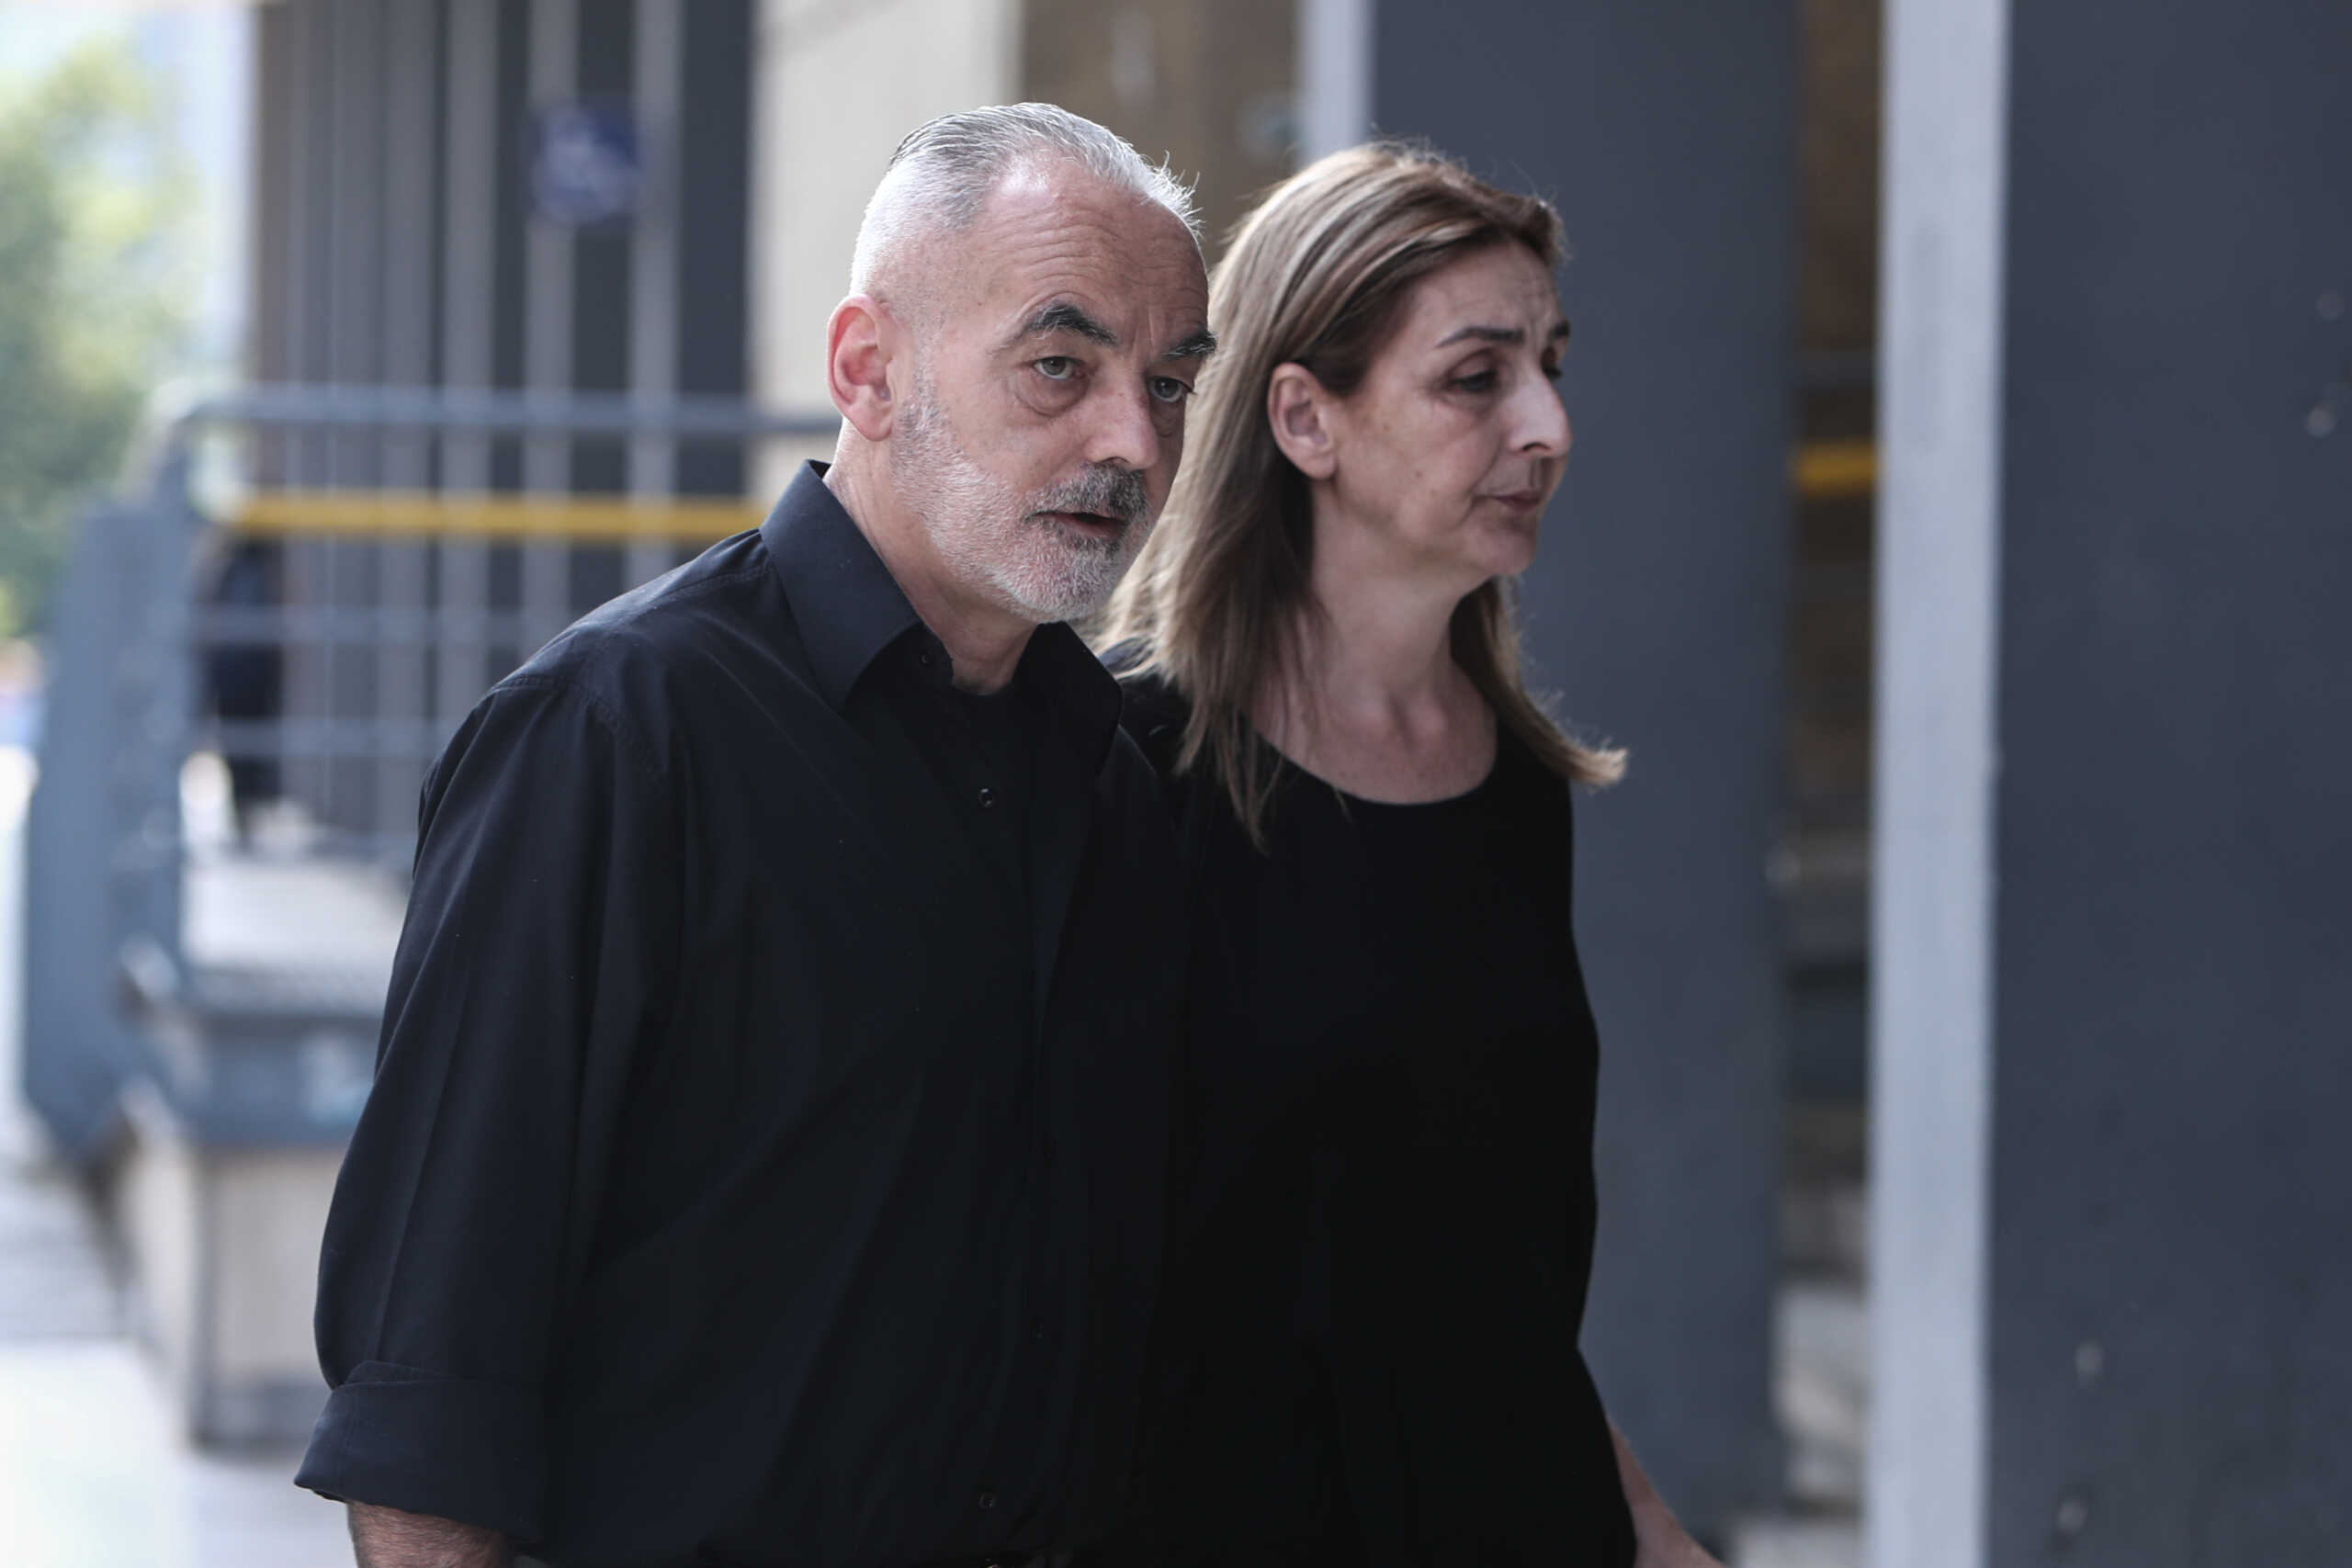 Άλκης Καμπανός: «Δεν έχω οργή για τους δολοφόνους» λέει ο πατέρας του, δυο χρόνια μετά το έγκλημα